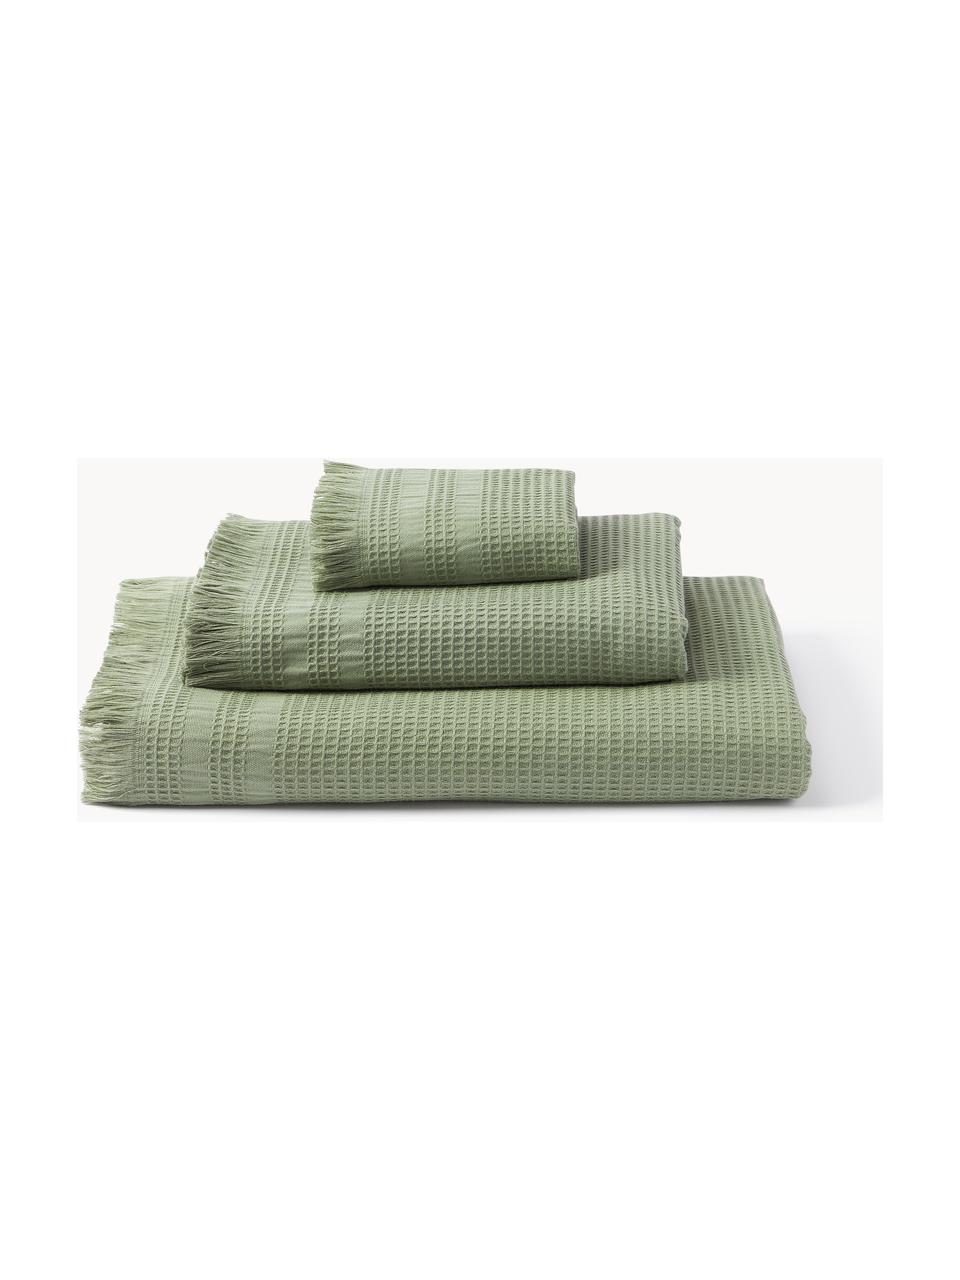 Lot de serviettes de bain en piqué gaufré Yara, tailles variées, Vert olive, 3 éléments (1 serviette invité, 1 serviette de toilette et 1 drap de bain)